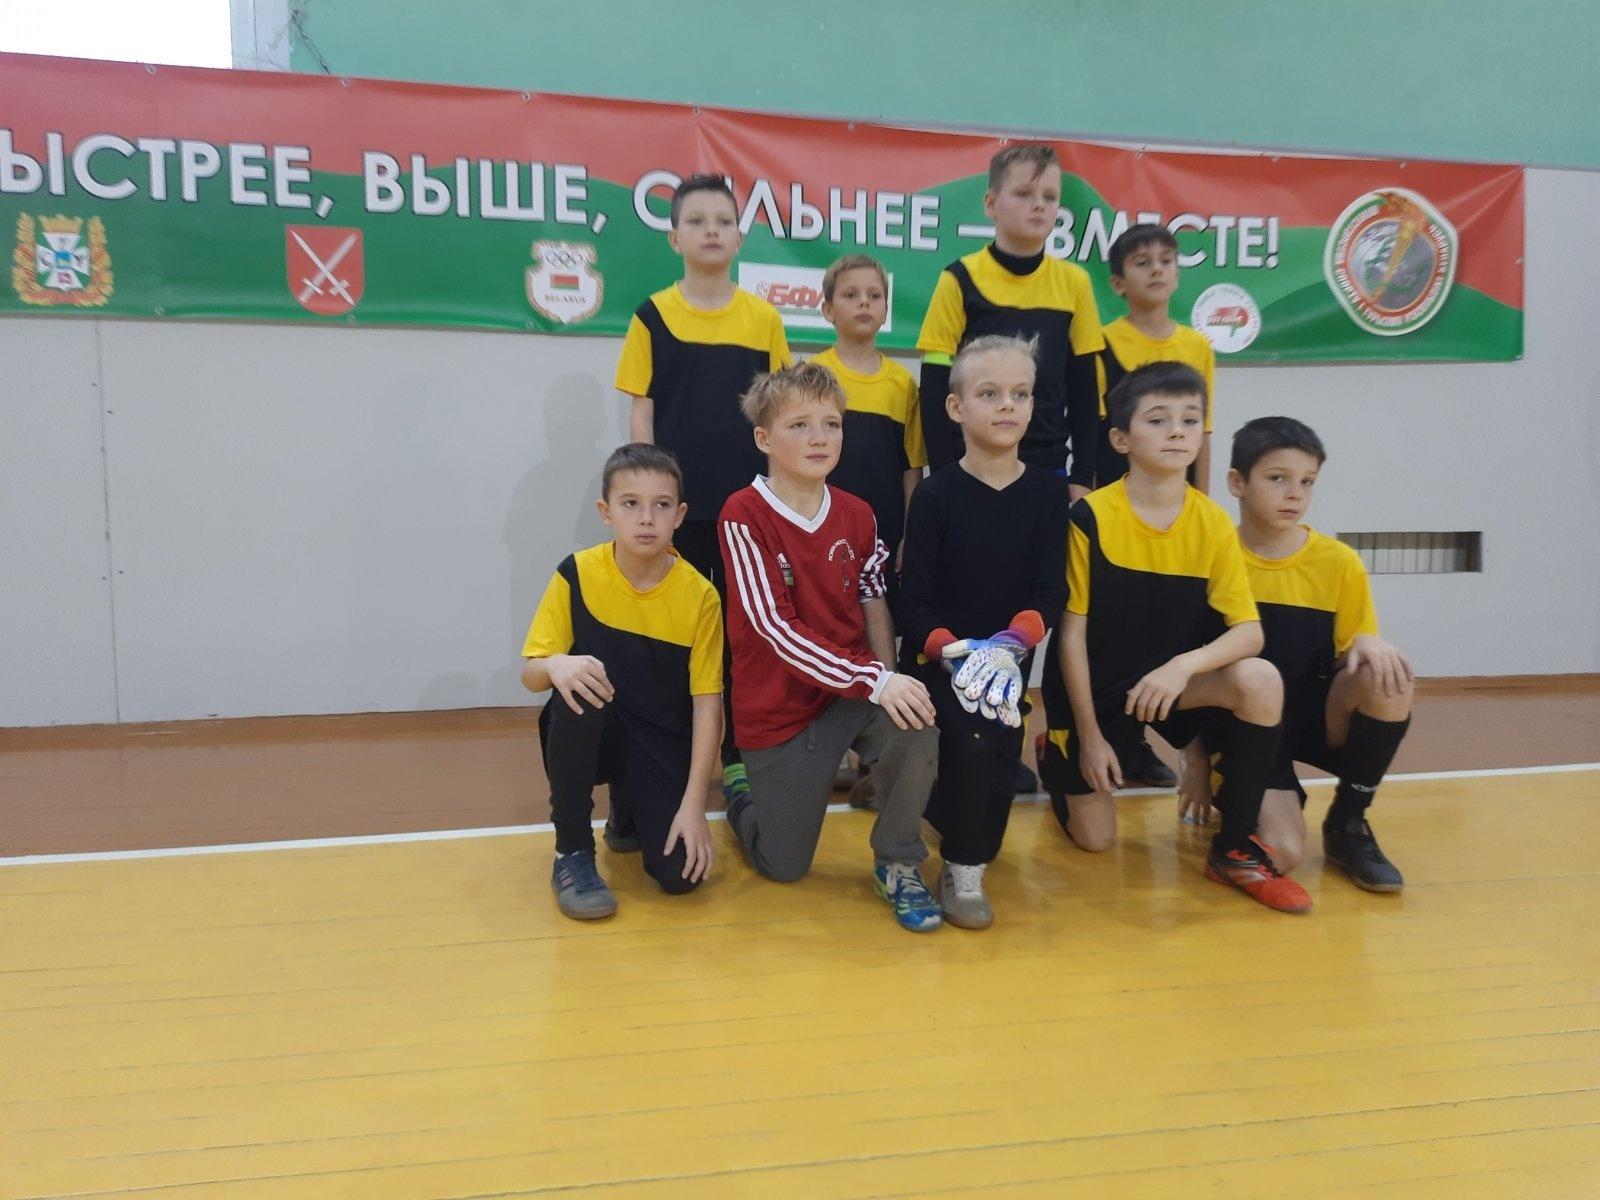 Юные футболисты Наровли приняли участие во II туре регионального турнира «Припятский дивизион». Промежуточное второе место. Удачи в дальнейших матчах, ребята!